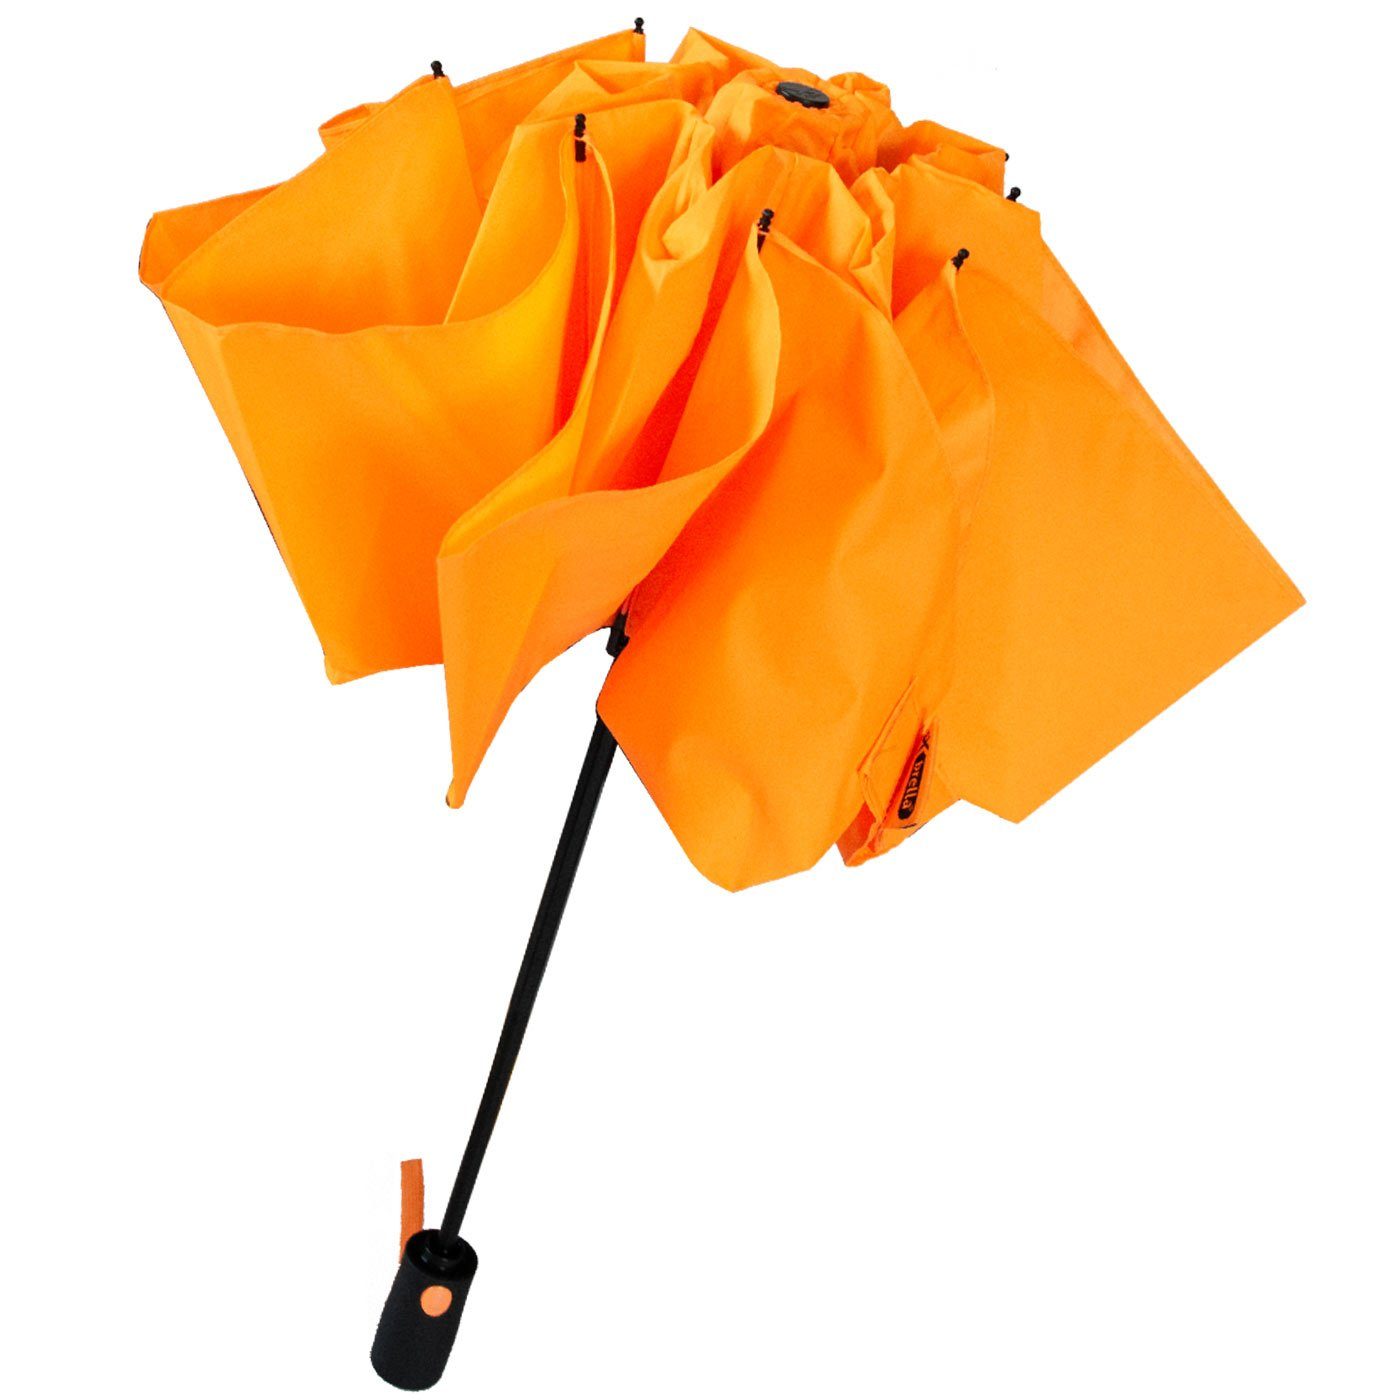 stabilen mit Reverse Taschenregenschirm öffnender iX-brella Speichen bunten umgekehrt neon-orange Fiberglas-Automatiksch,